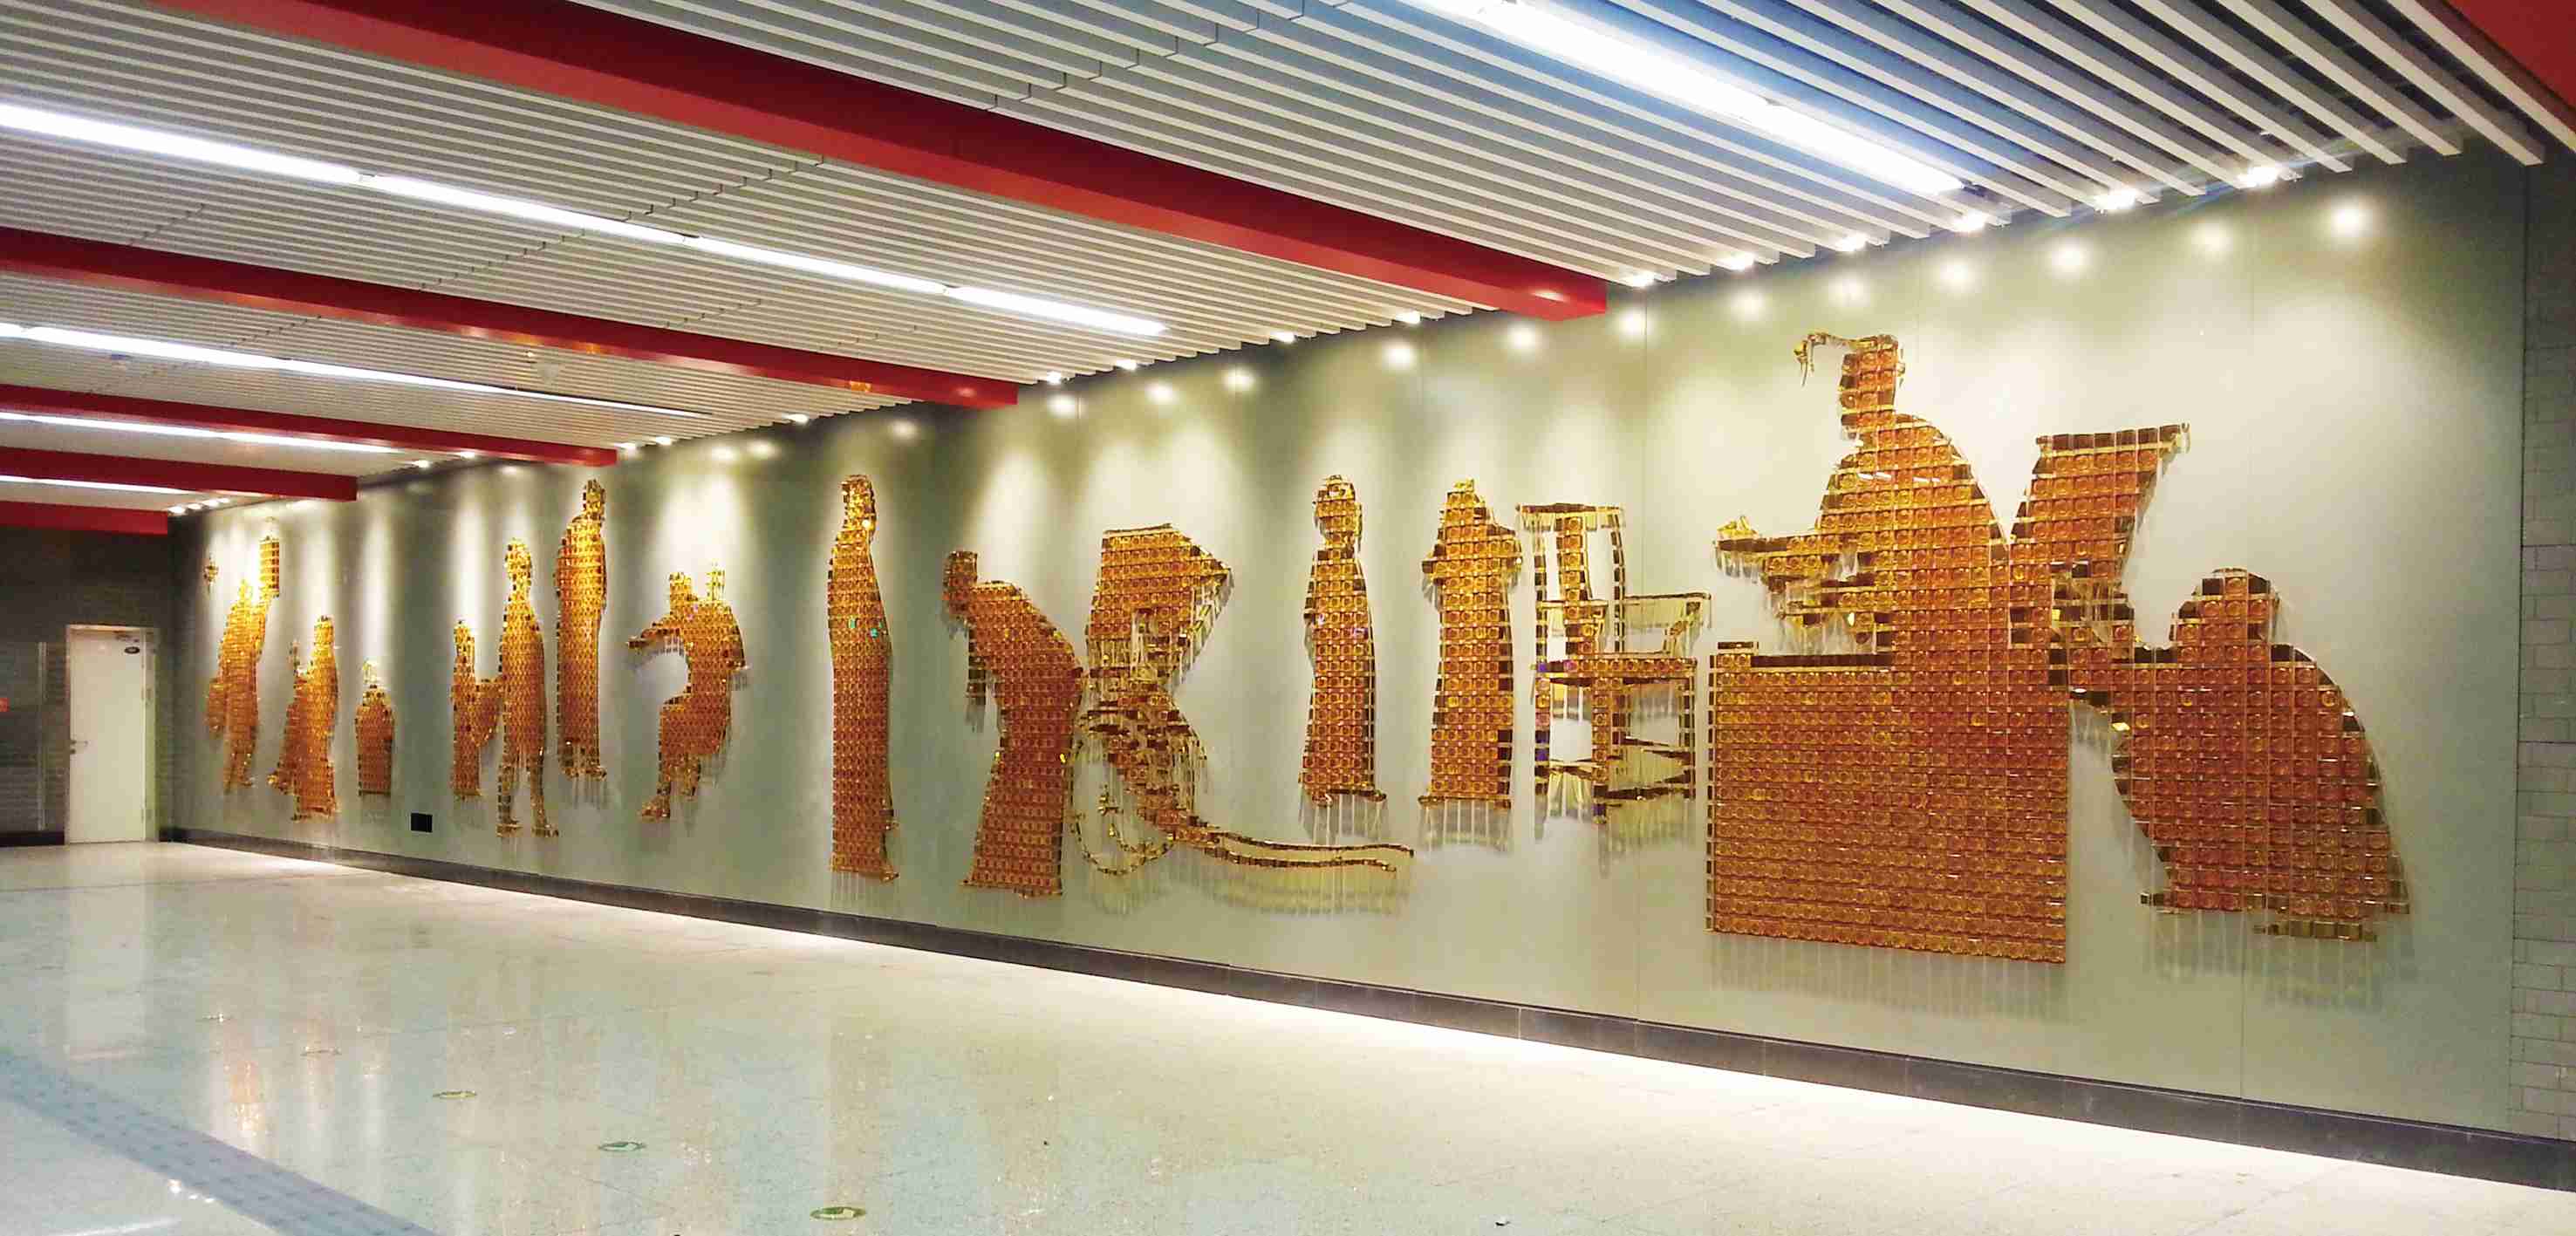 北京地铁6号线南锣鼓巷站公共艺术作品《北京·记忆》